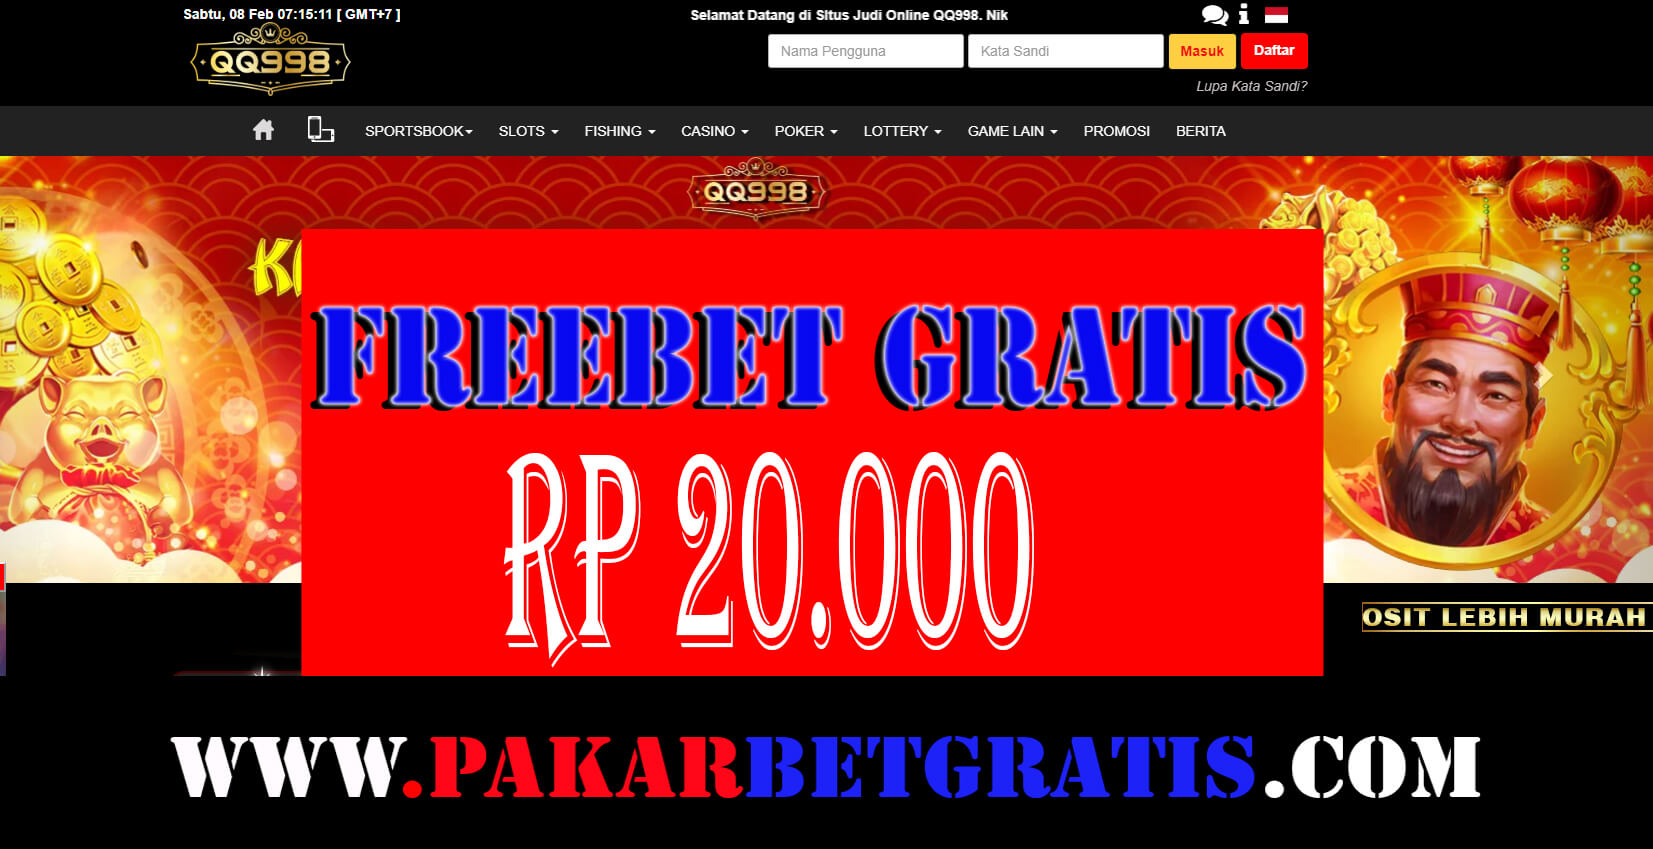 Freebet Gratis qq998 Rp 20.000